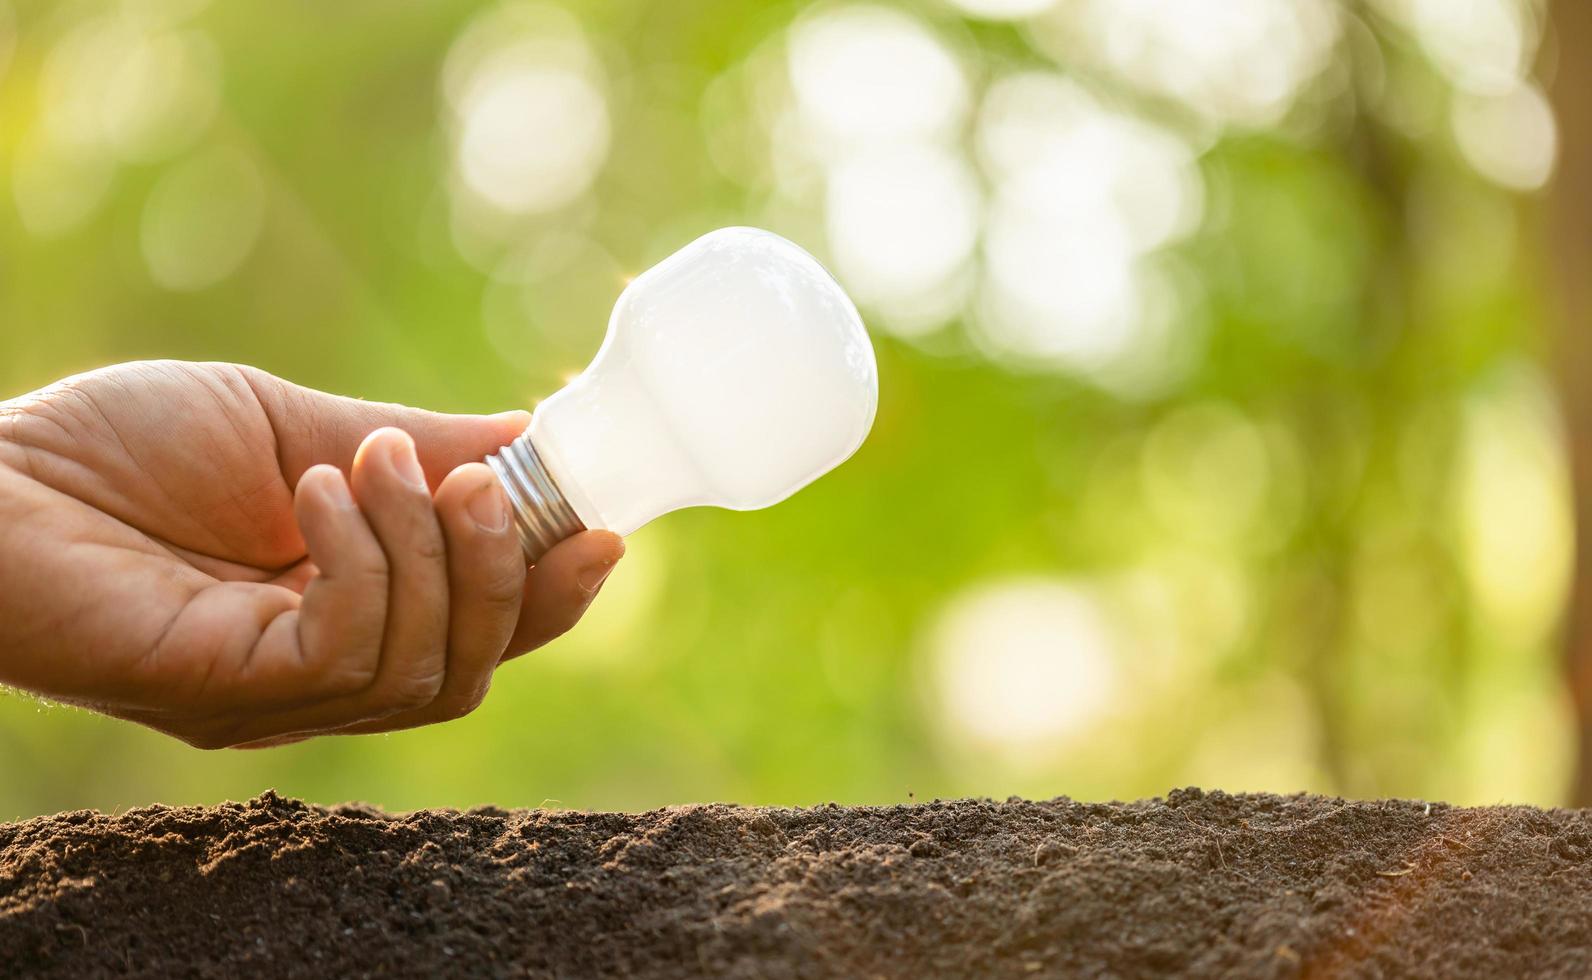 tillväxt eller energisparande koncept. människor planterar vit glödlampa i jord på grön trädgård eller natur oskärpa foto